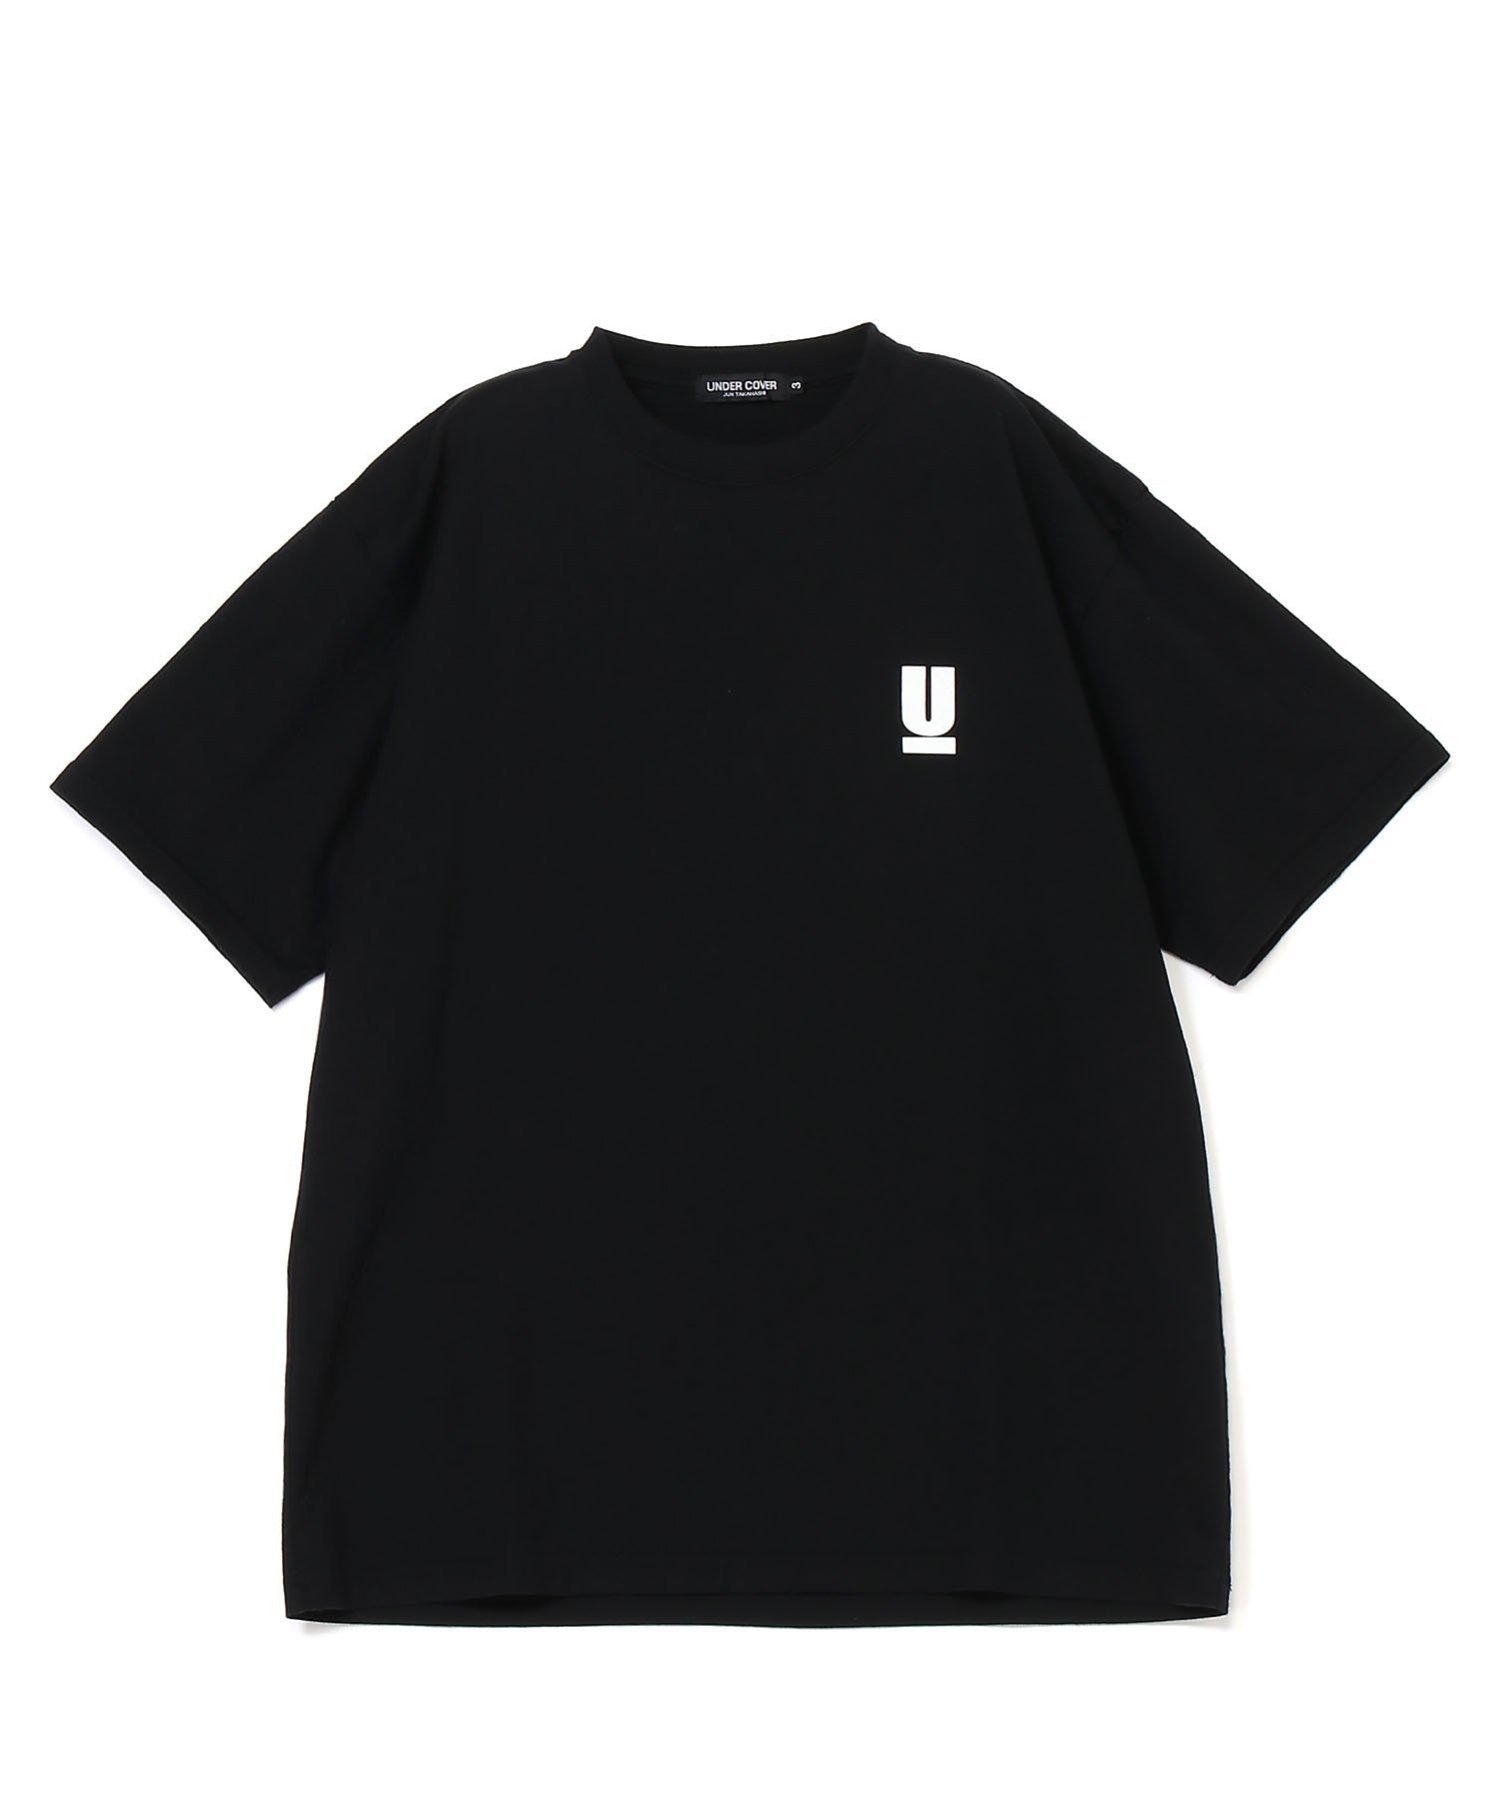 UNDERCOVER UB0D3803 アンダーカバー トップス カットソー Tシャツ ブラック ネイビー ホワイト【送料無料】